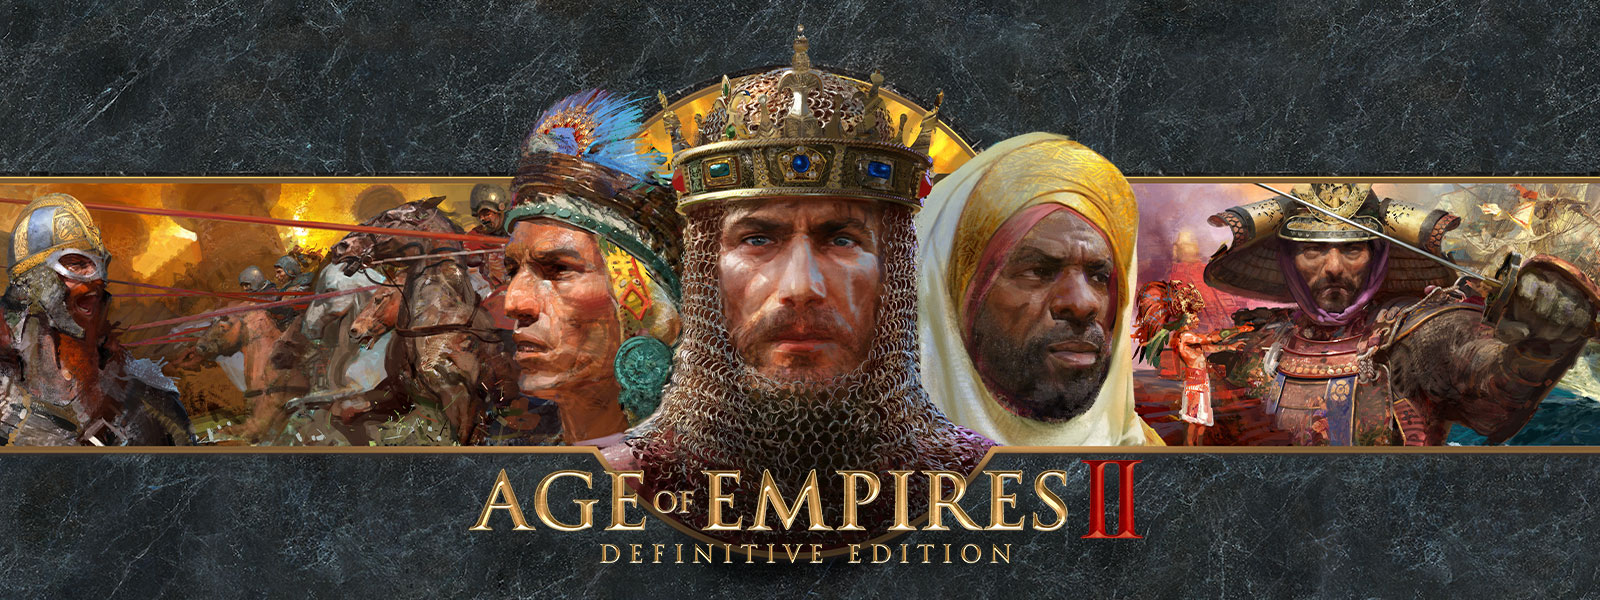 Логотип Age of Empires II: Definitive Edition на темно-сером фоне с изображением полководцев и их армий